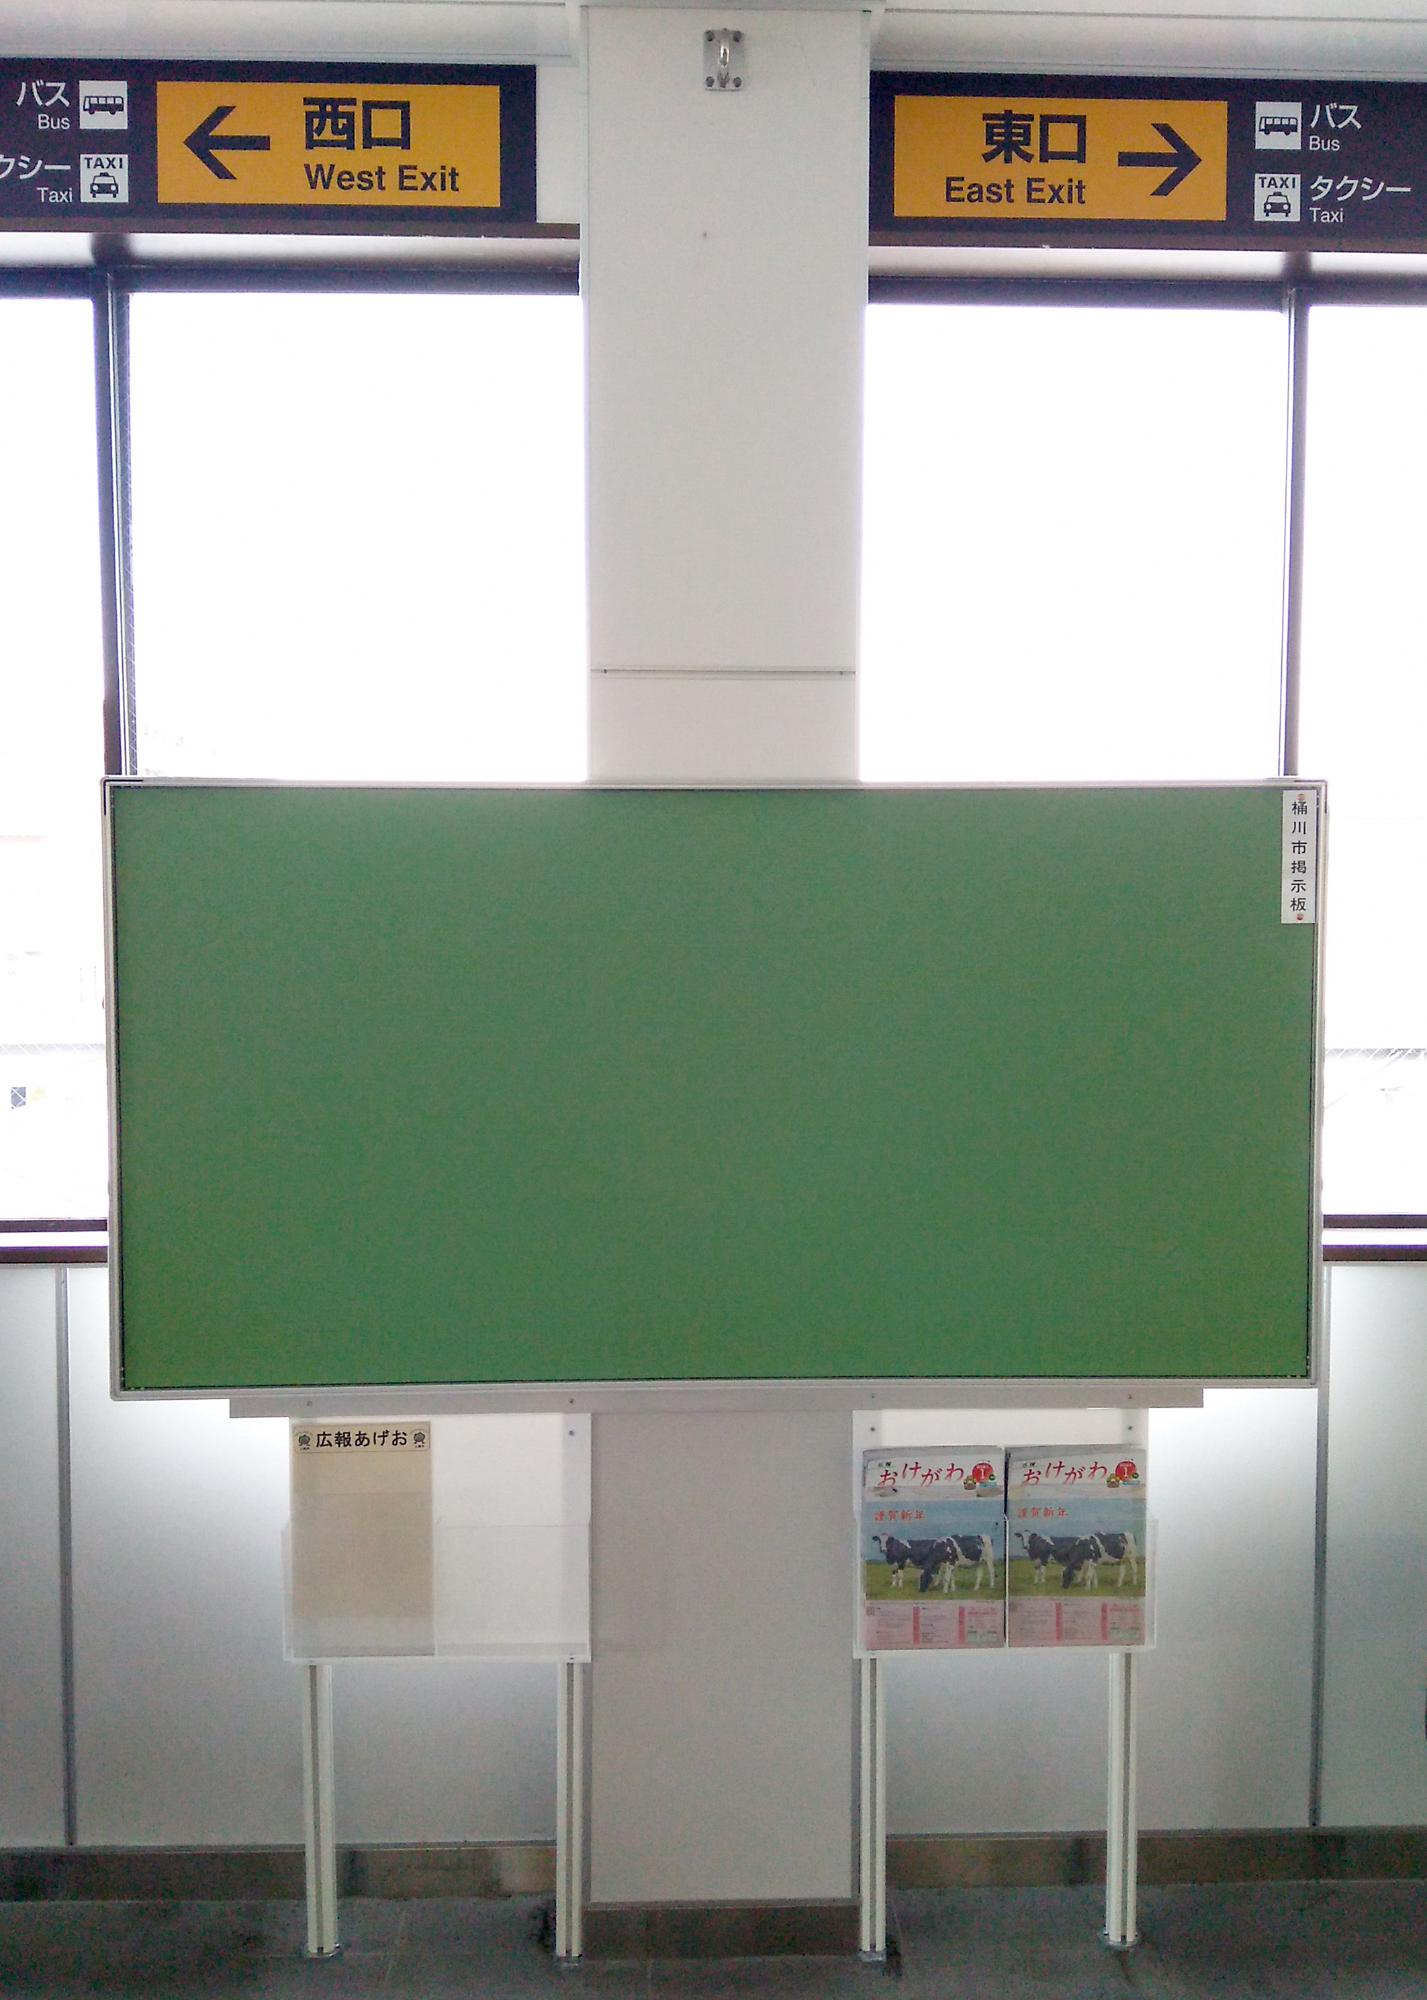 リニューアルした、桶川駅改札前の掲示板の写真